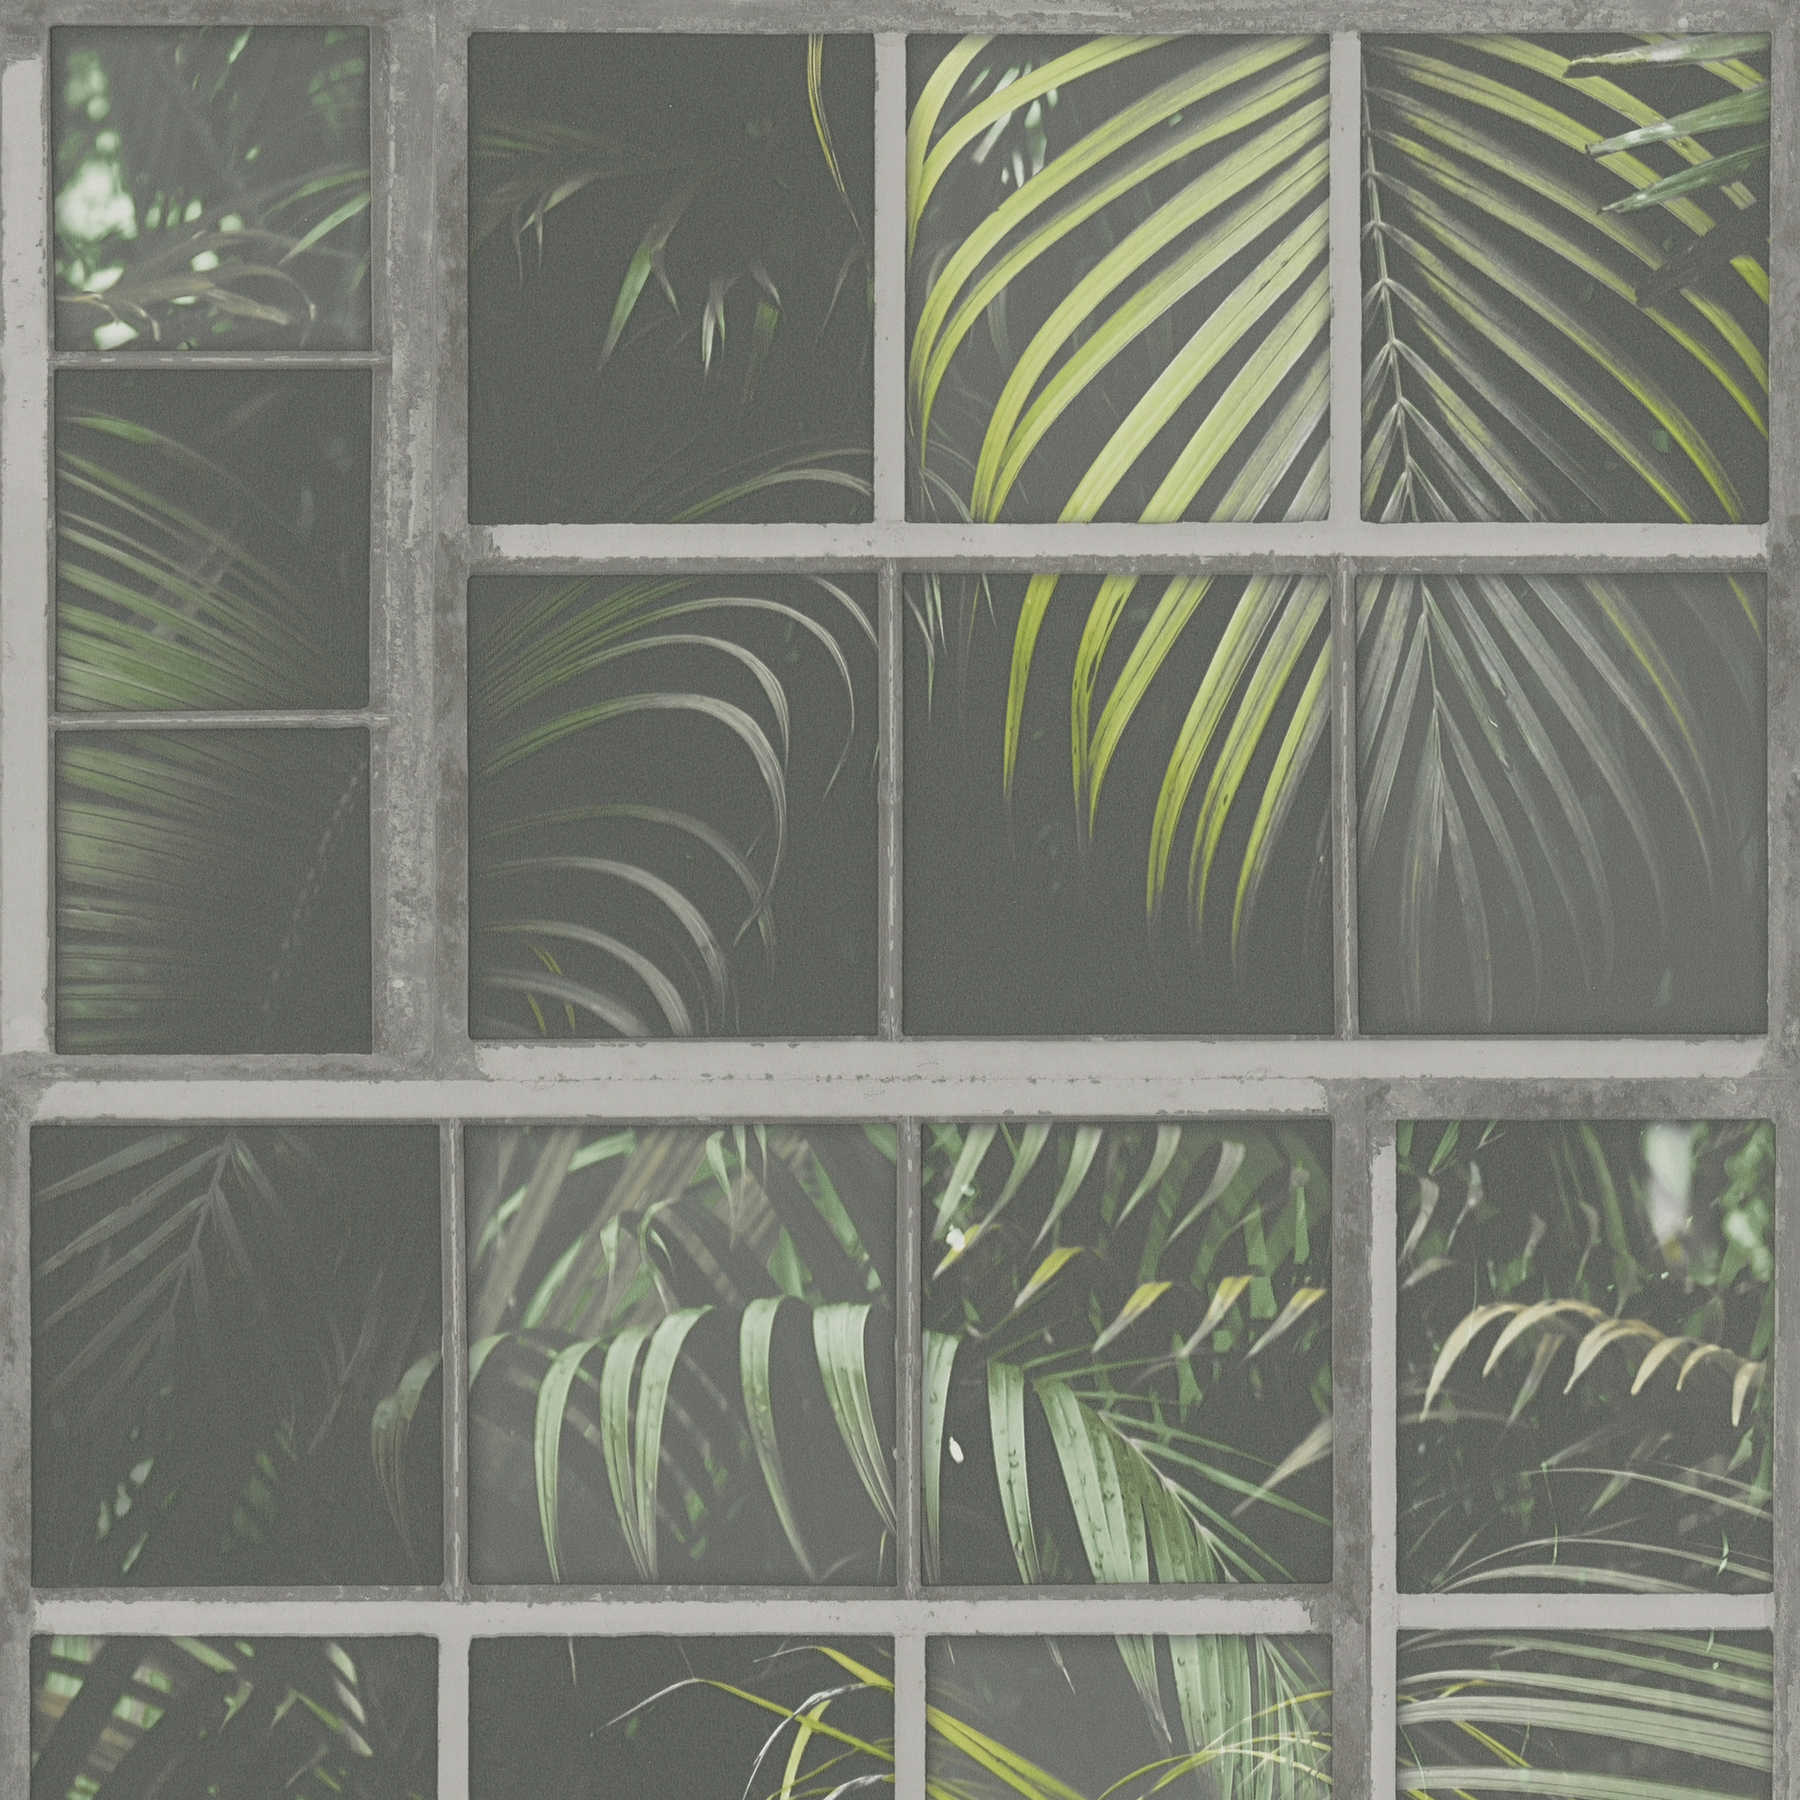 Papier peint Motif fenêtre, look industriel & fougères - gris, vert, noir
